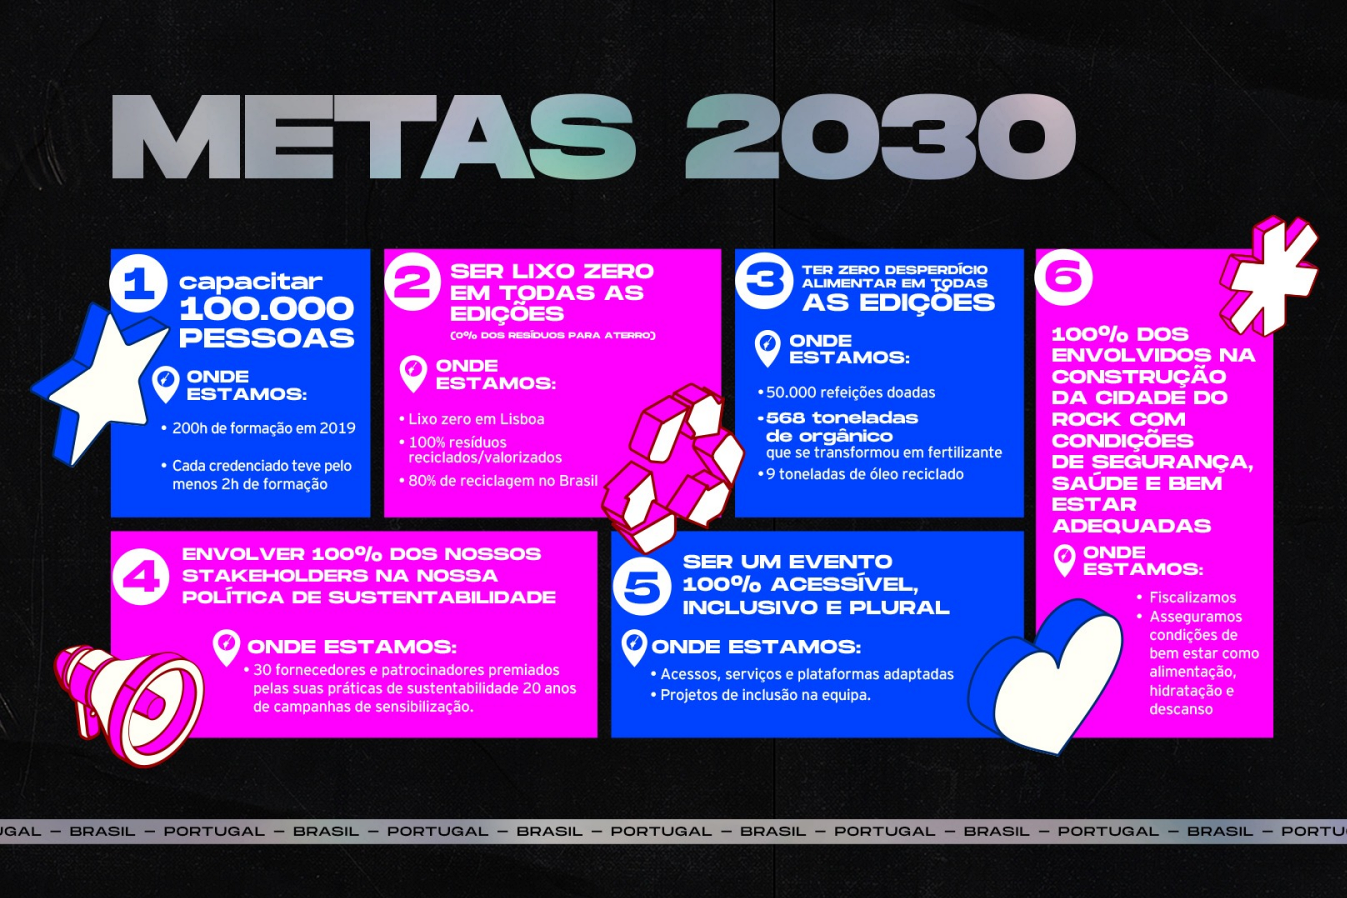 Rock in Rio Metas 2030